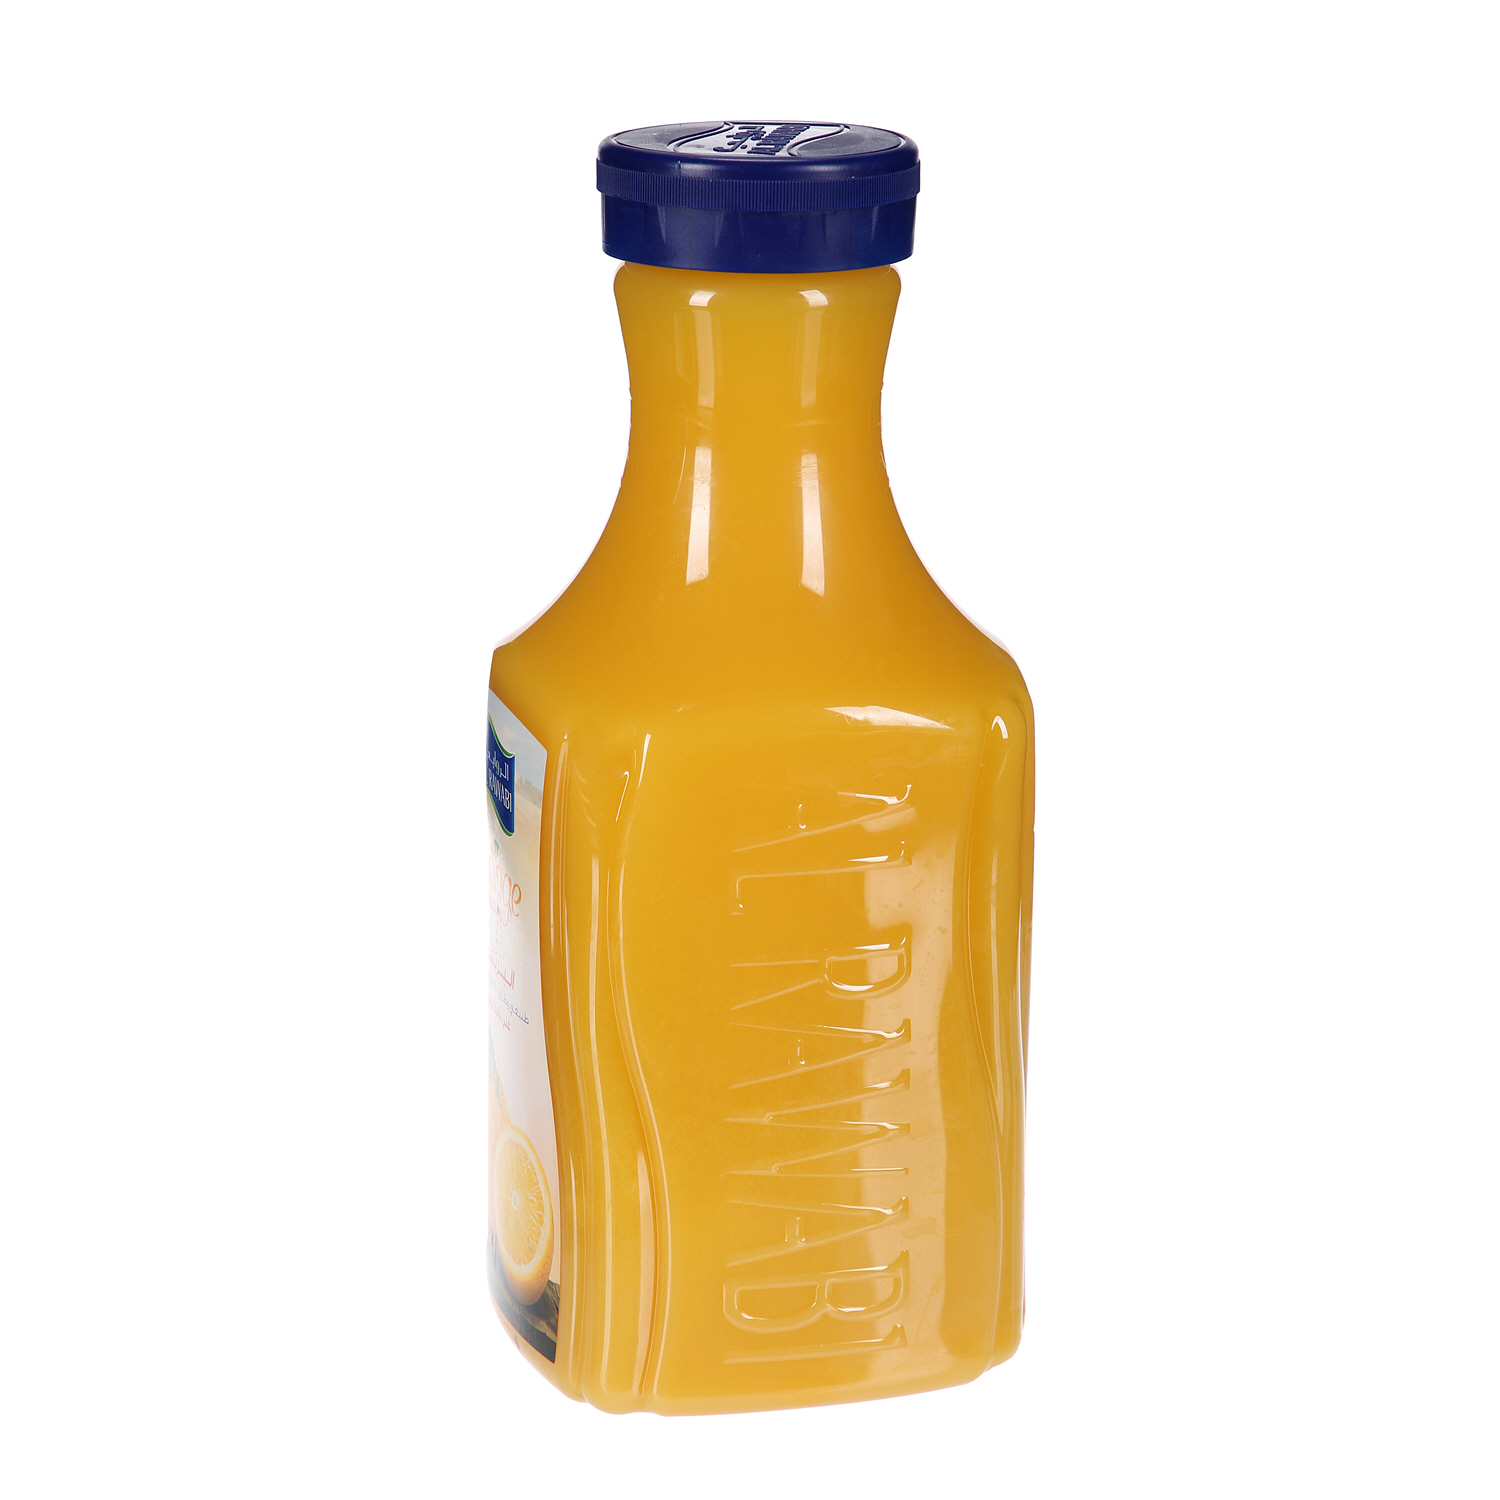 الروابي عصير البرتقال غني بالكالسيوم 1.75 لتر